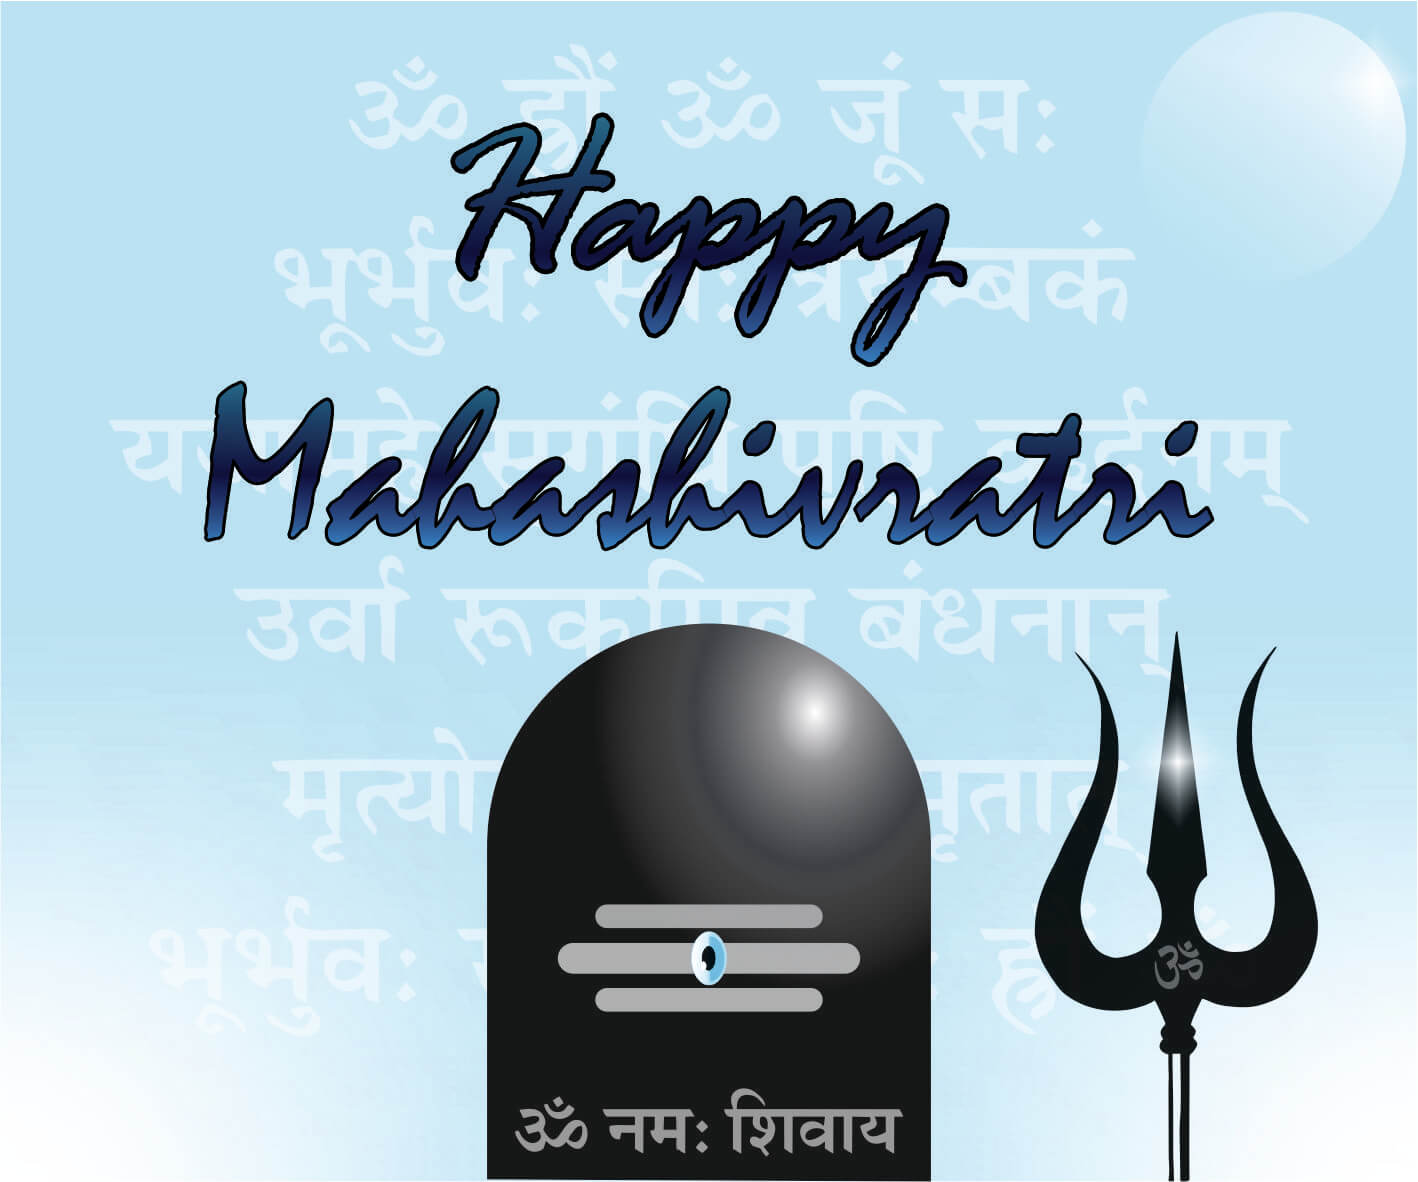 Mahashivratri_03 | eGreetings Portal